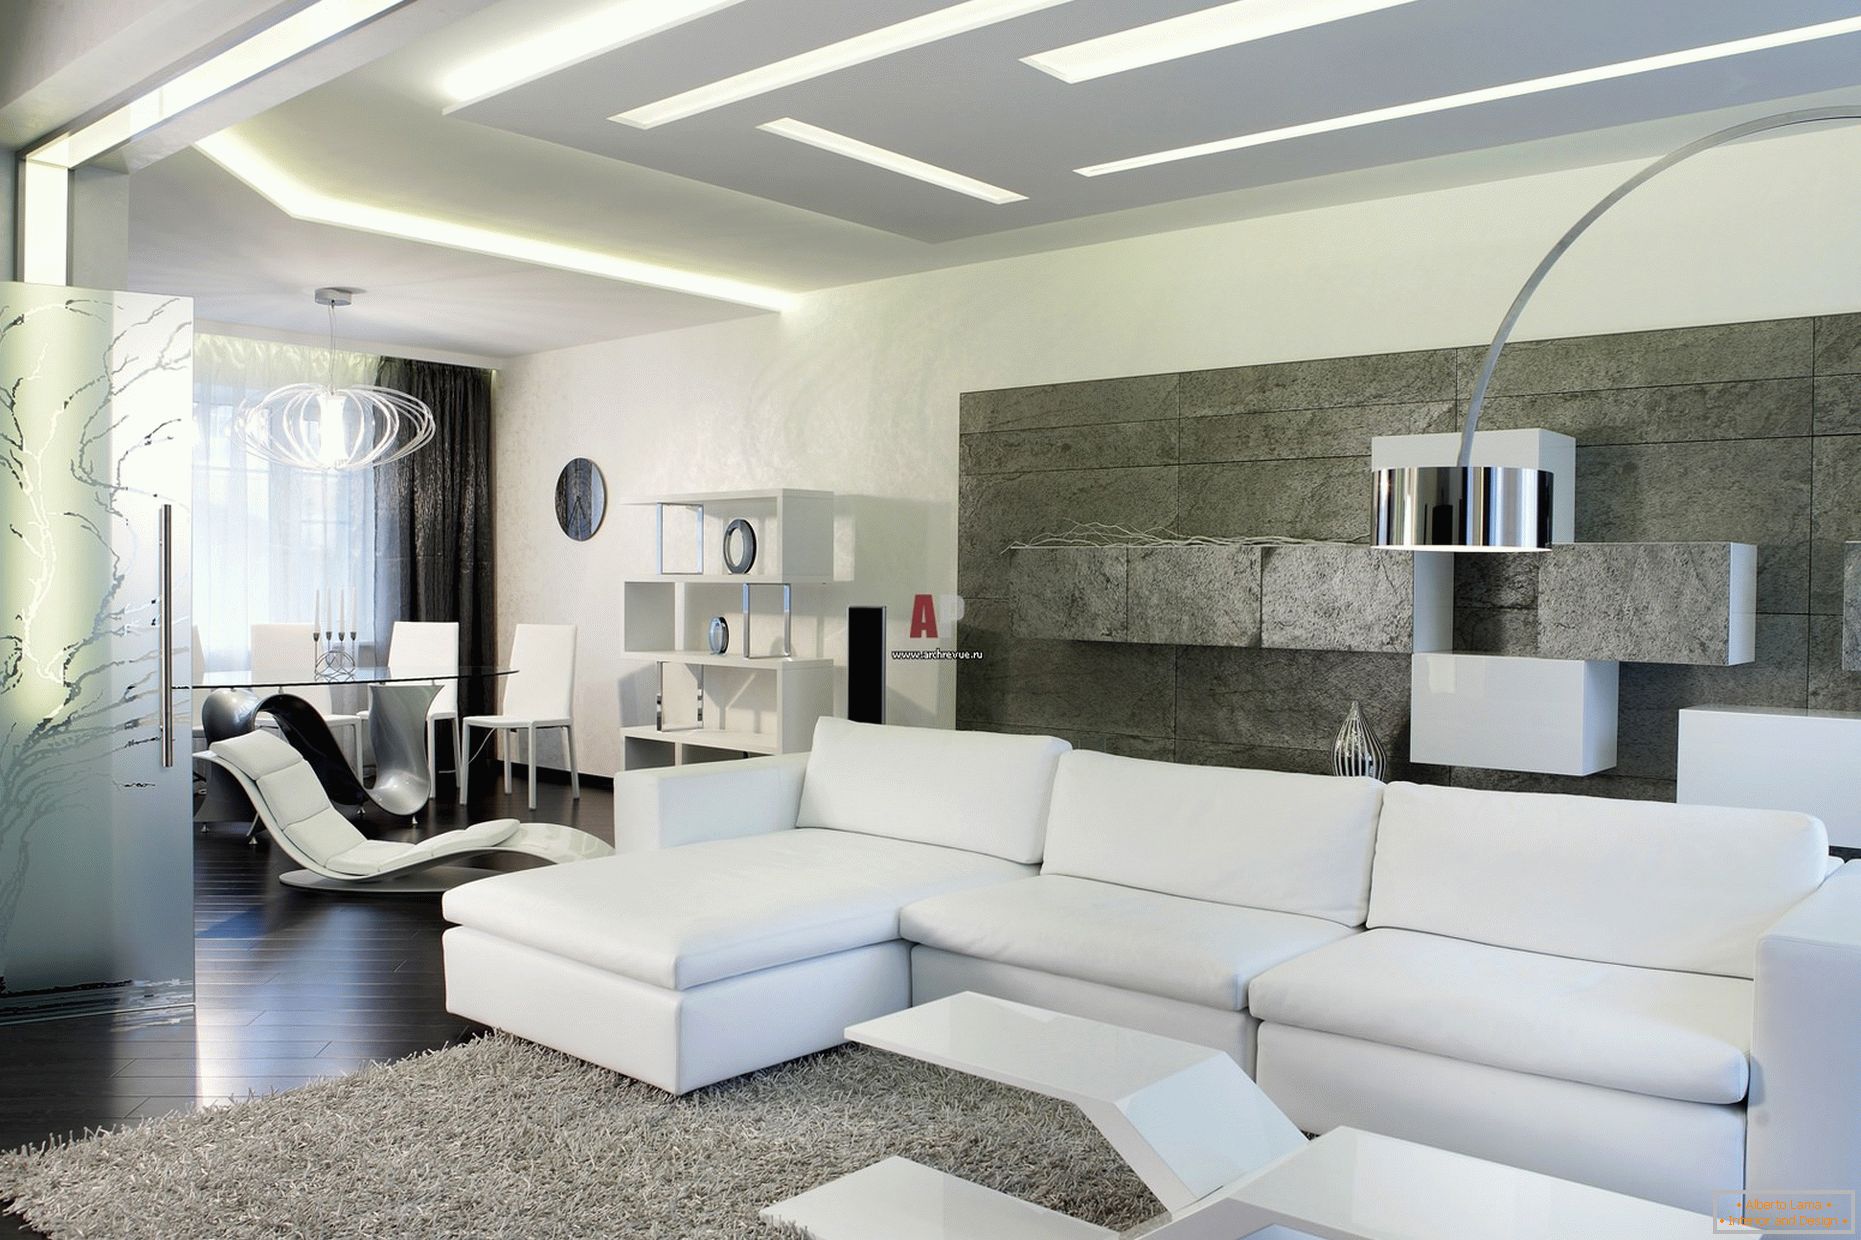 Білий інтер'єр гостей кімнати в мінімалістичному стилі примітний сучасним, сміливим дизайном з нотками хай-тек.